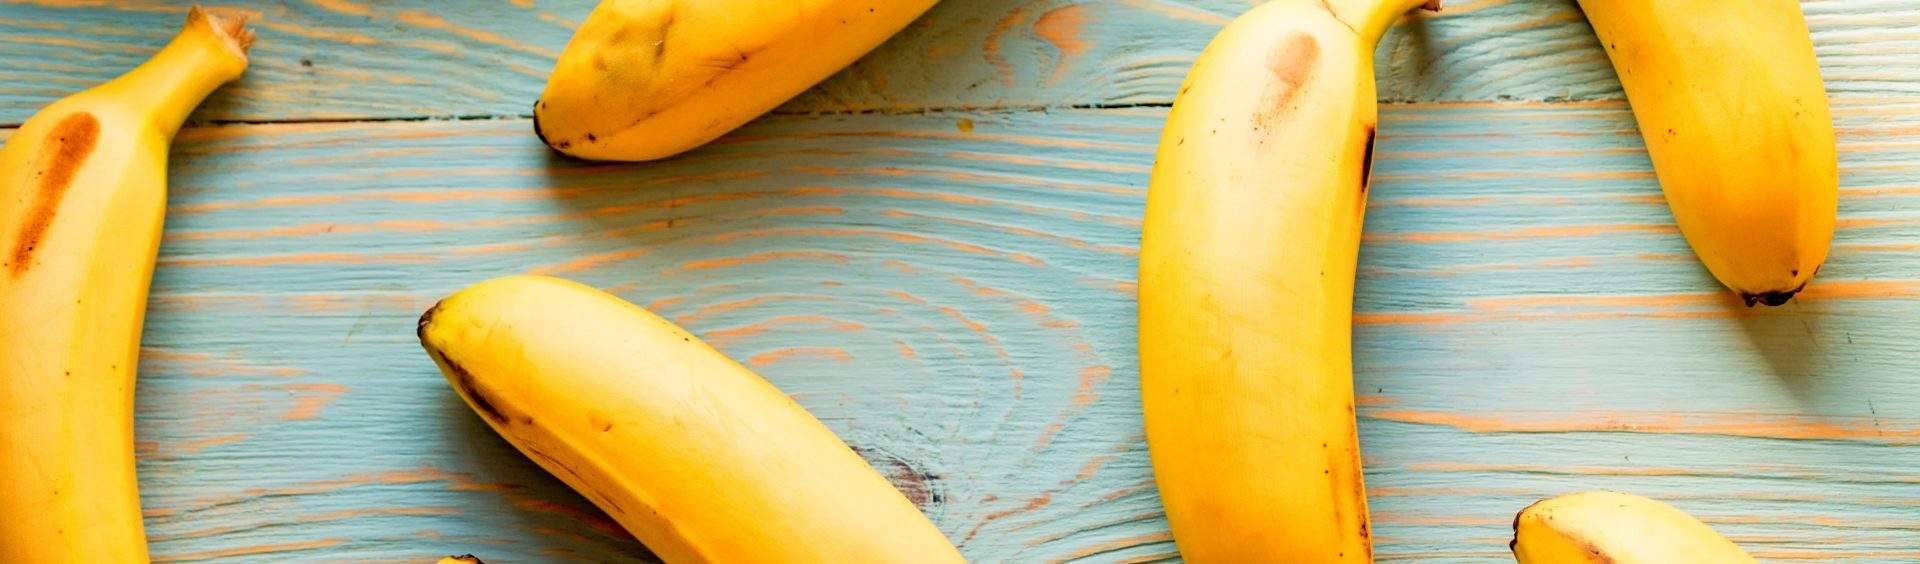 dieta da banana é carboidrato frutas